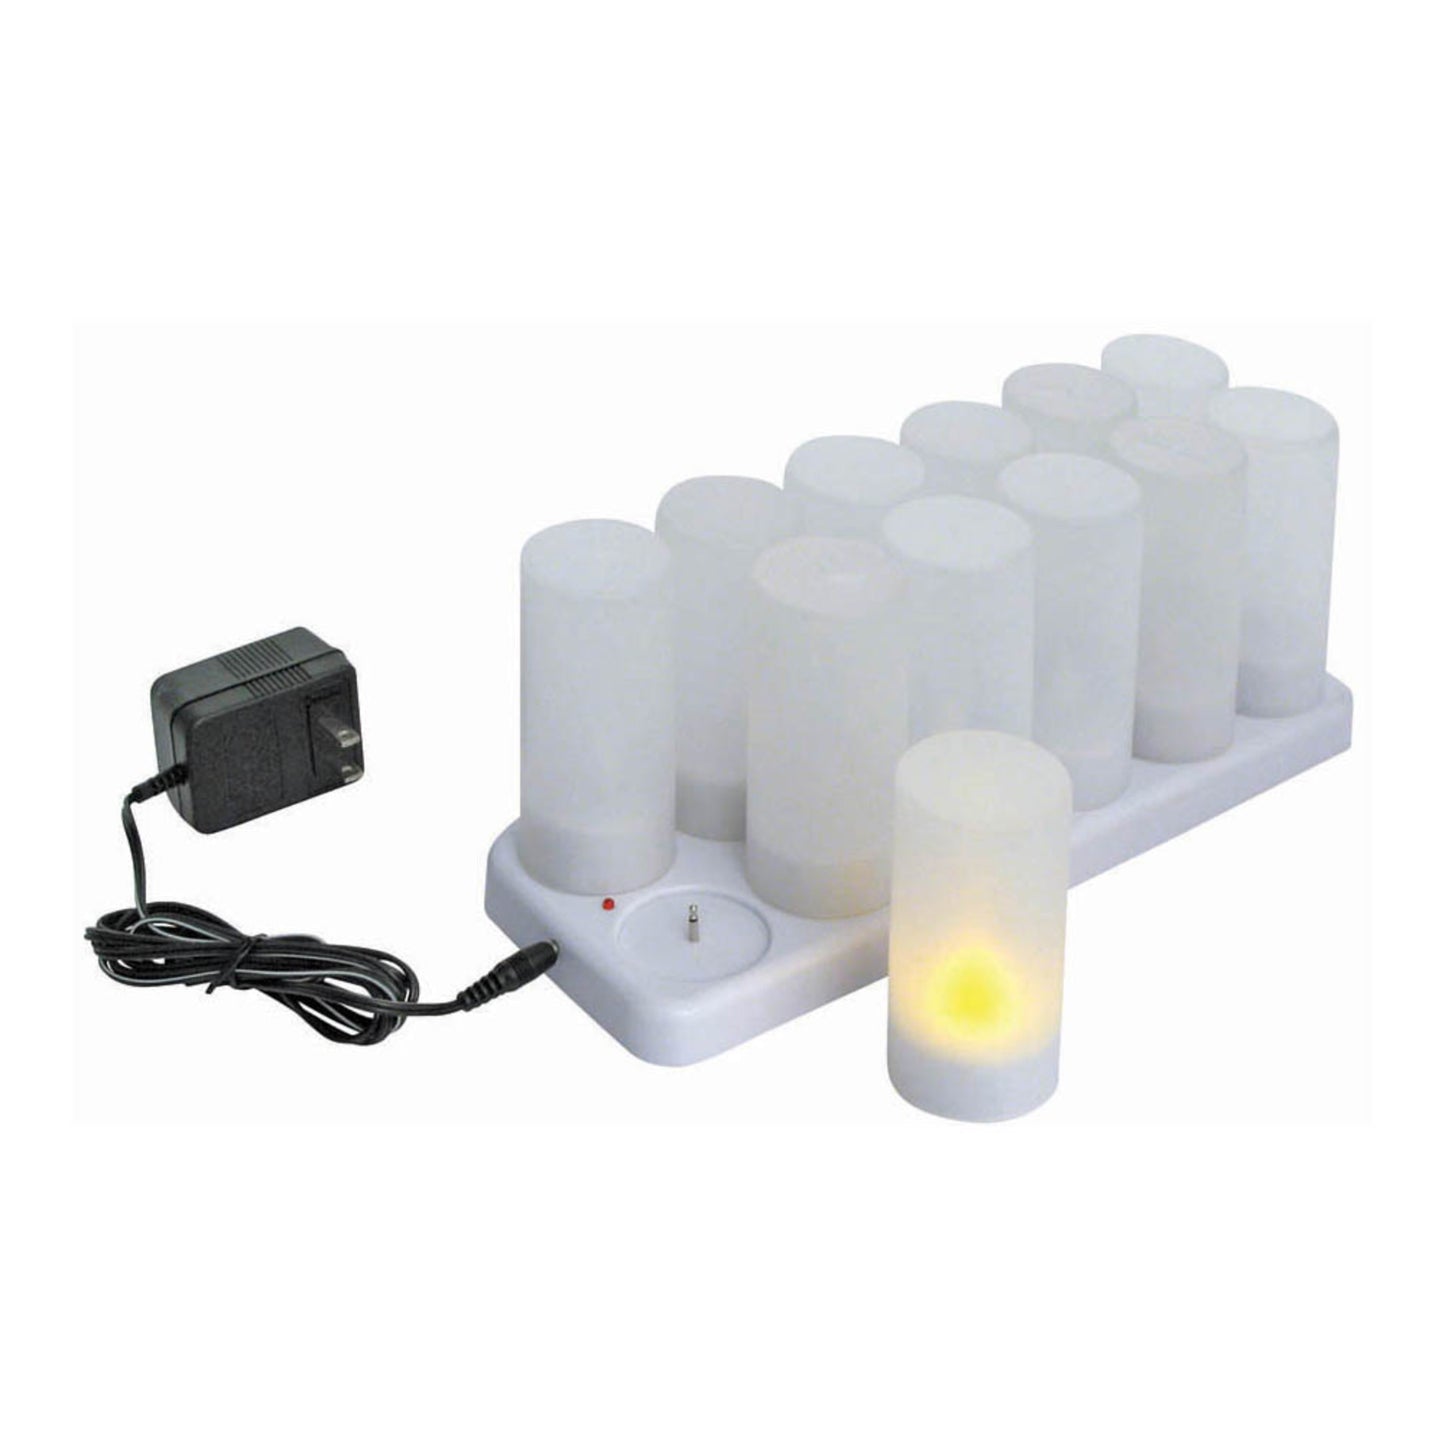 CLR-12S - Rechargeable Votive Tealight Set, 12-pieces/pack